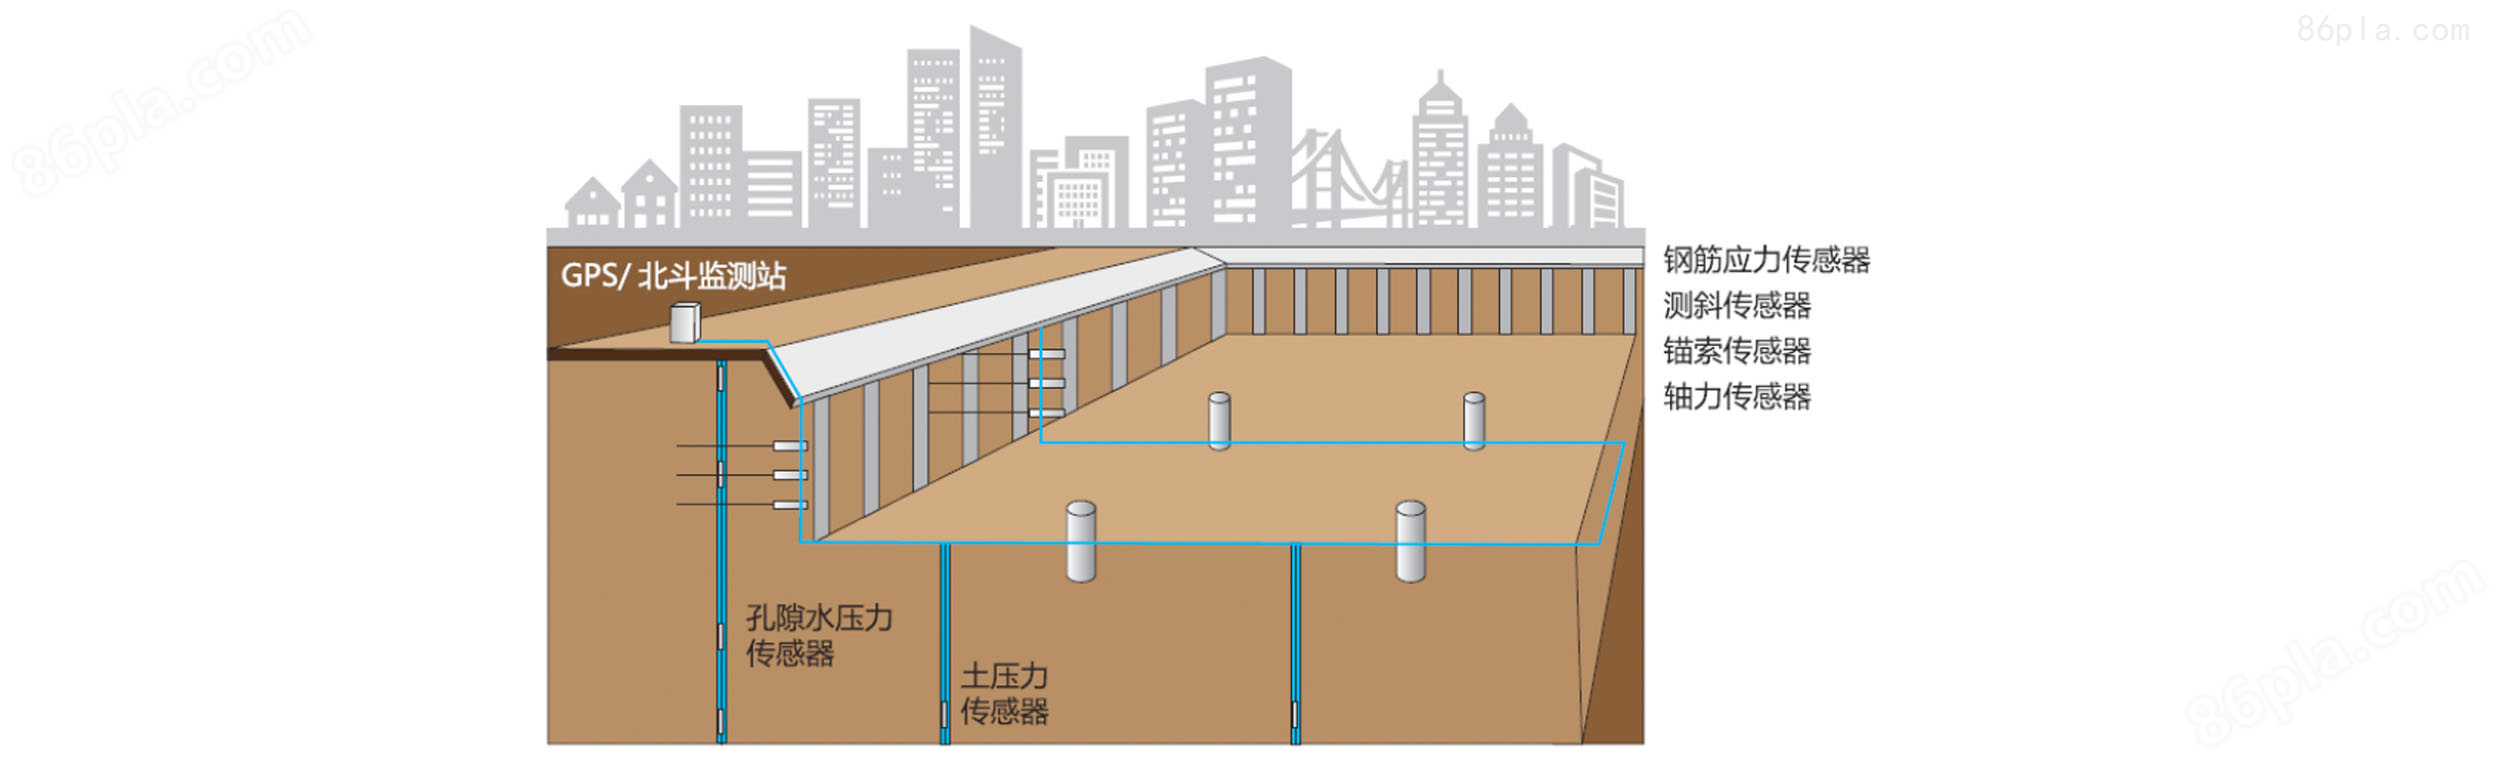 大型地下建筑环境安全监测系统方案